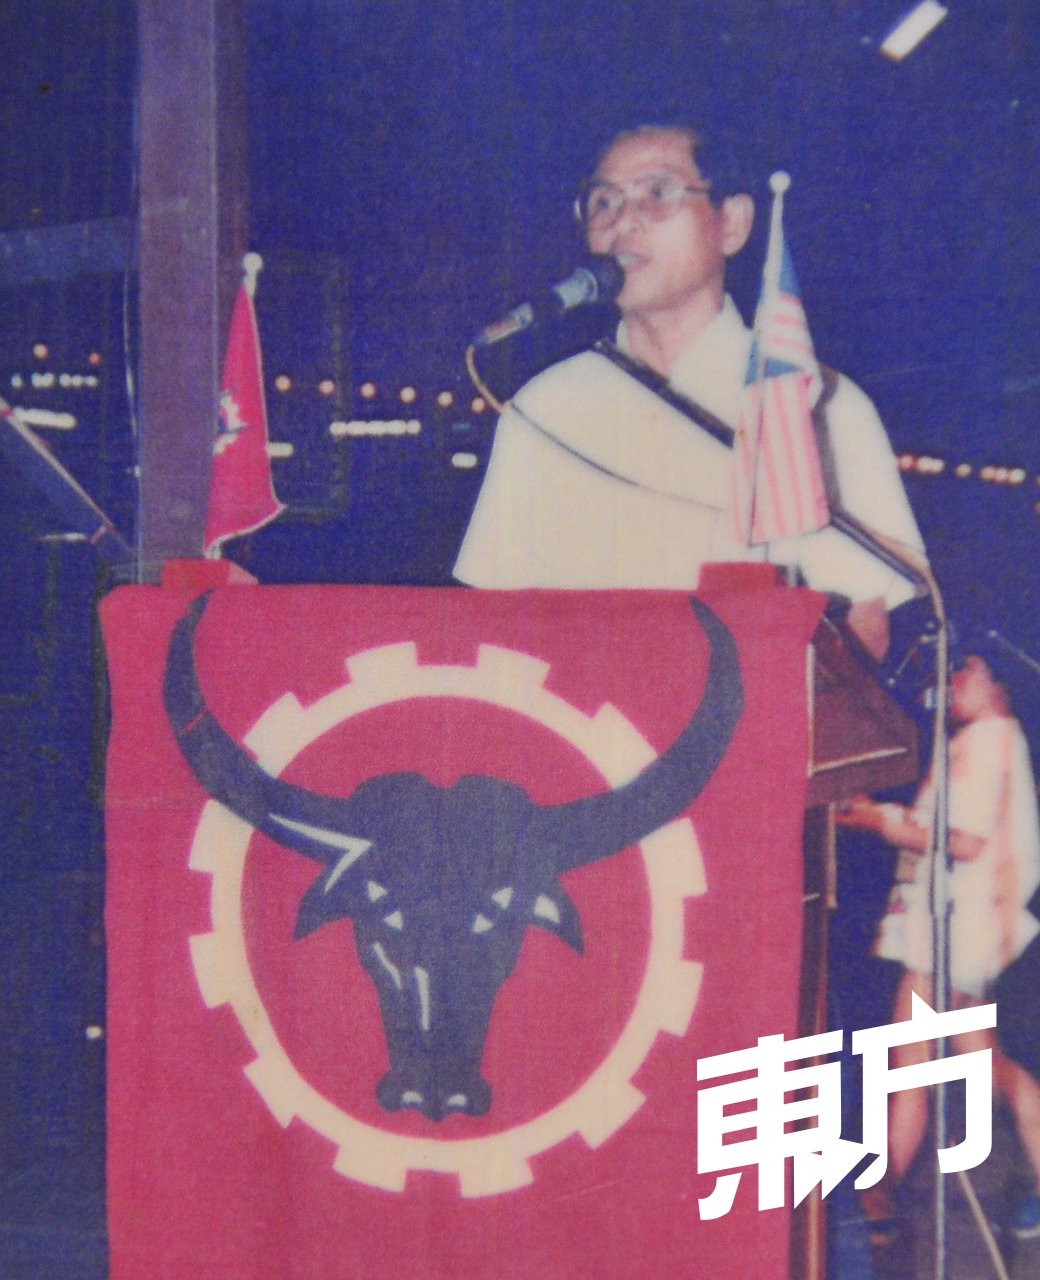 认同人民党不分种族，为低下阶层人士争取权益的理念，陈进丰活跃于政党，曾担任峇都区会主席和文良港支部主席。